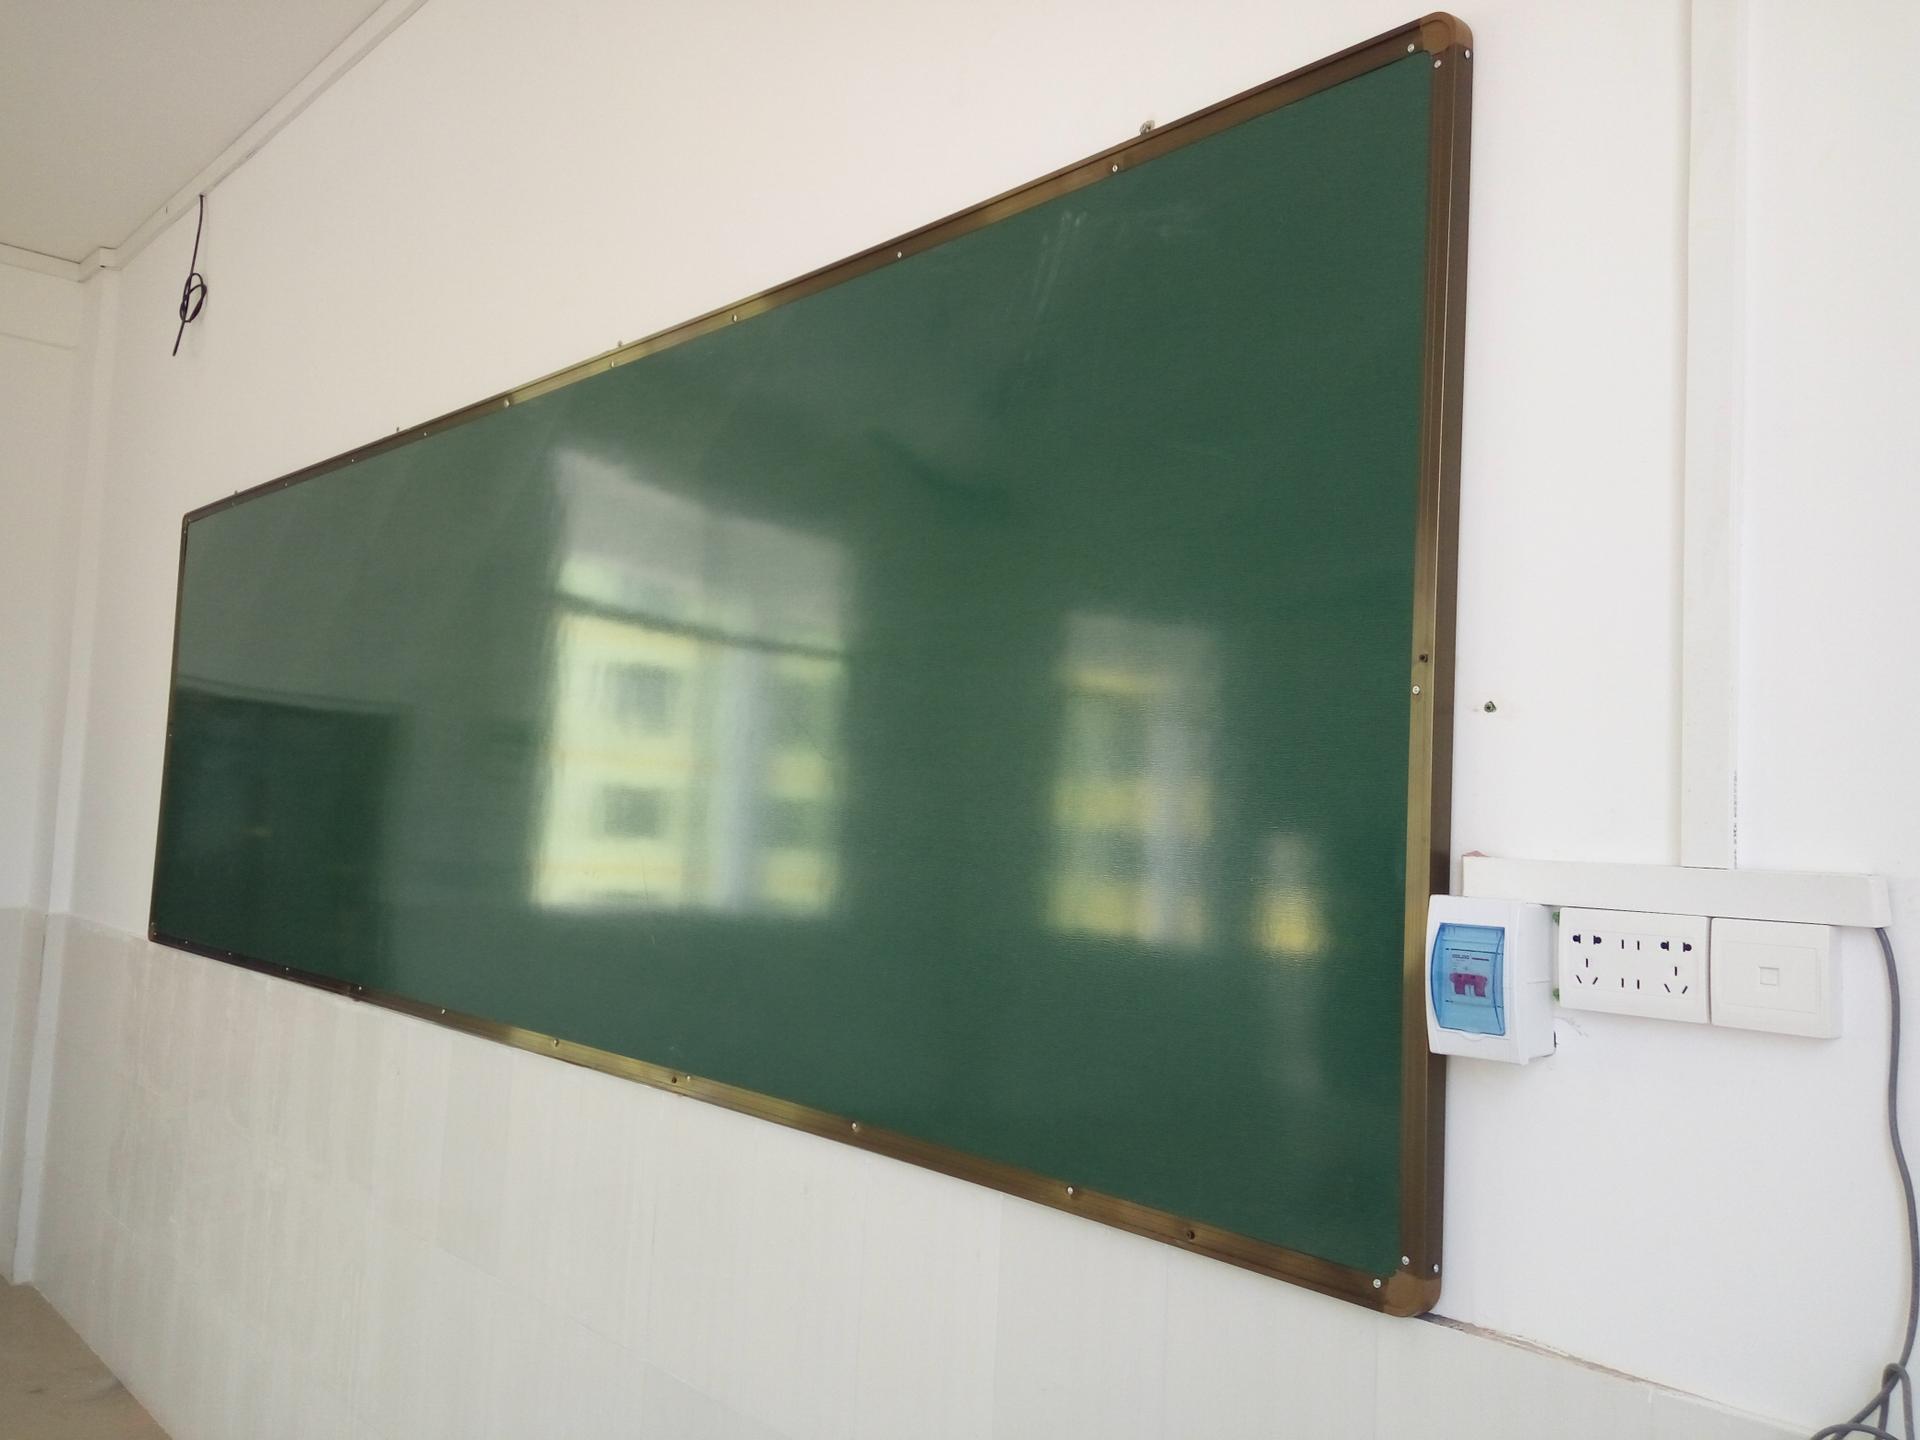 批发供应广西柳州磁性黑板磁性白板,教学绿板护眼磁性黑板磁性白板